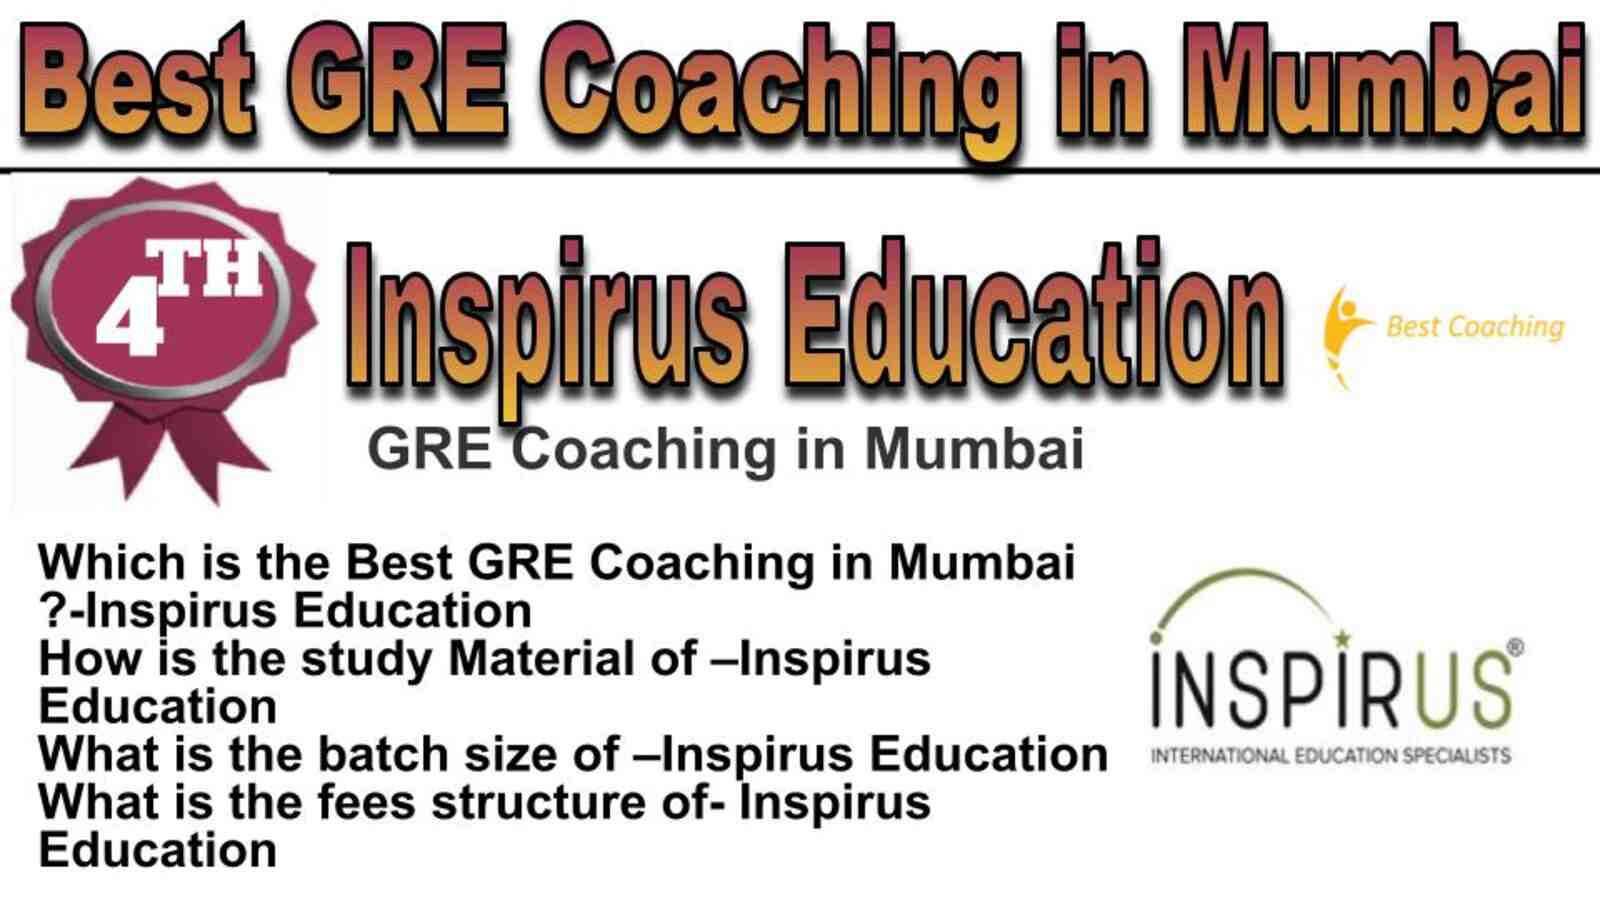 Rank 4 best GRE coaching in Mumbai